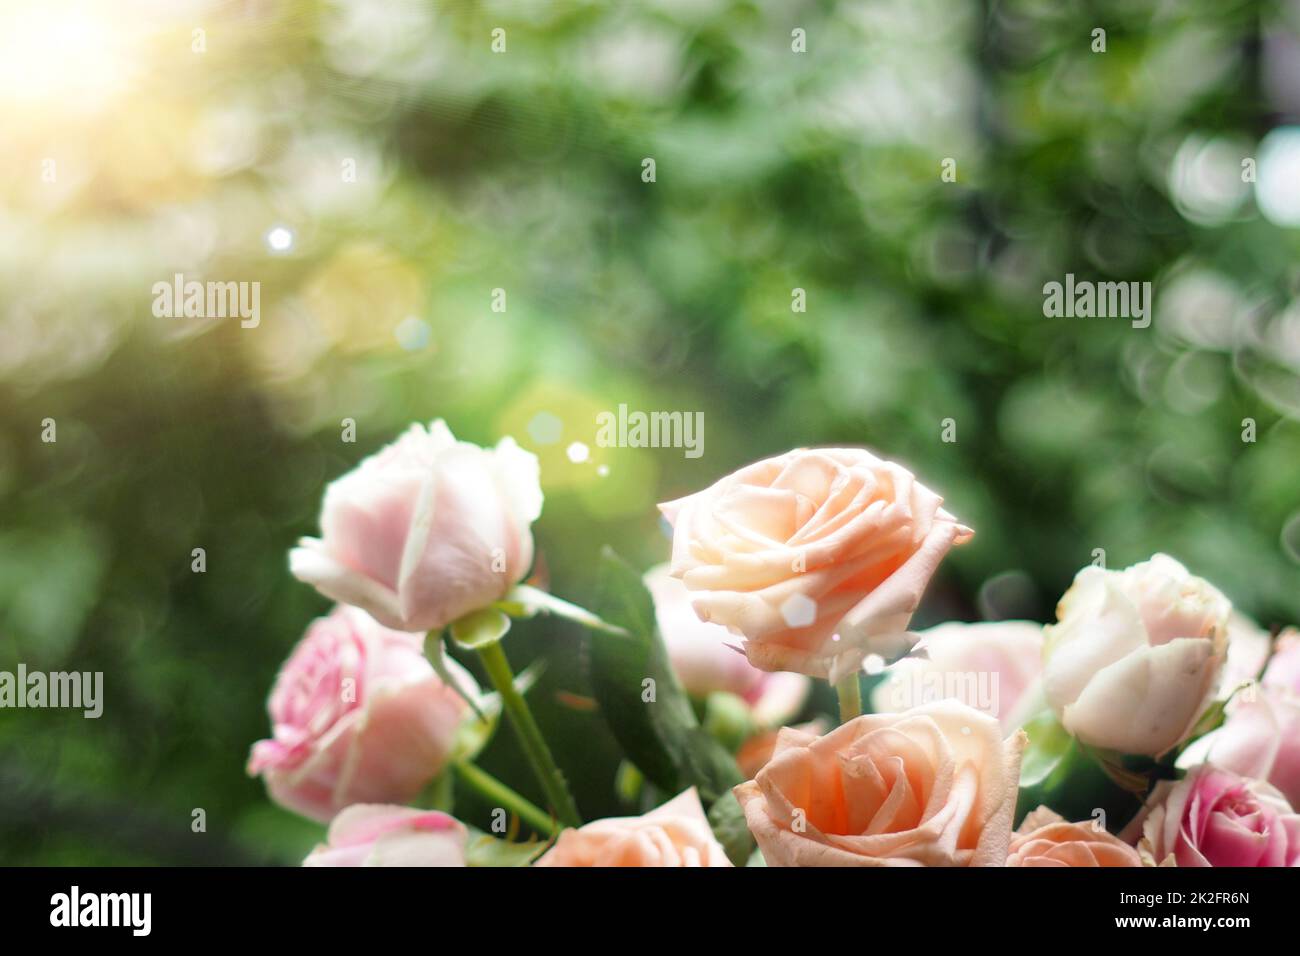 Bella morbida messa a fuoco rosa pastello rose in luce solare come un fiore sfocato Foto Stock